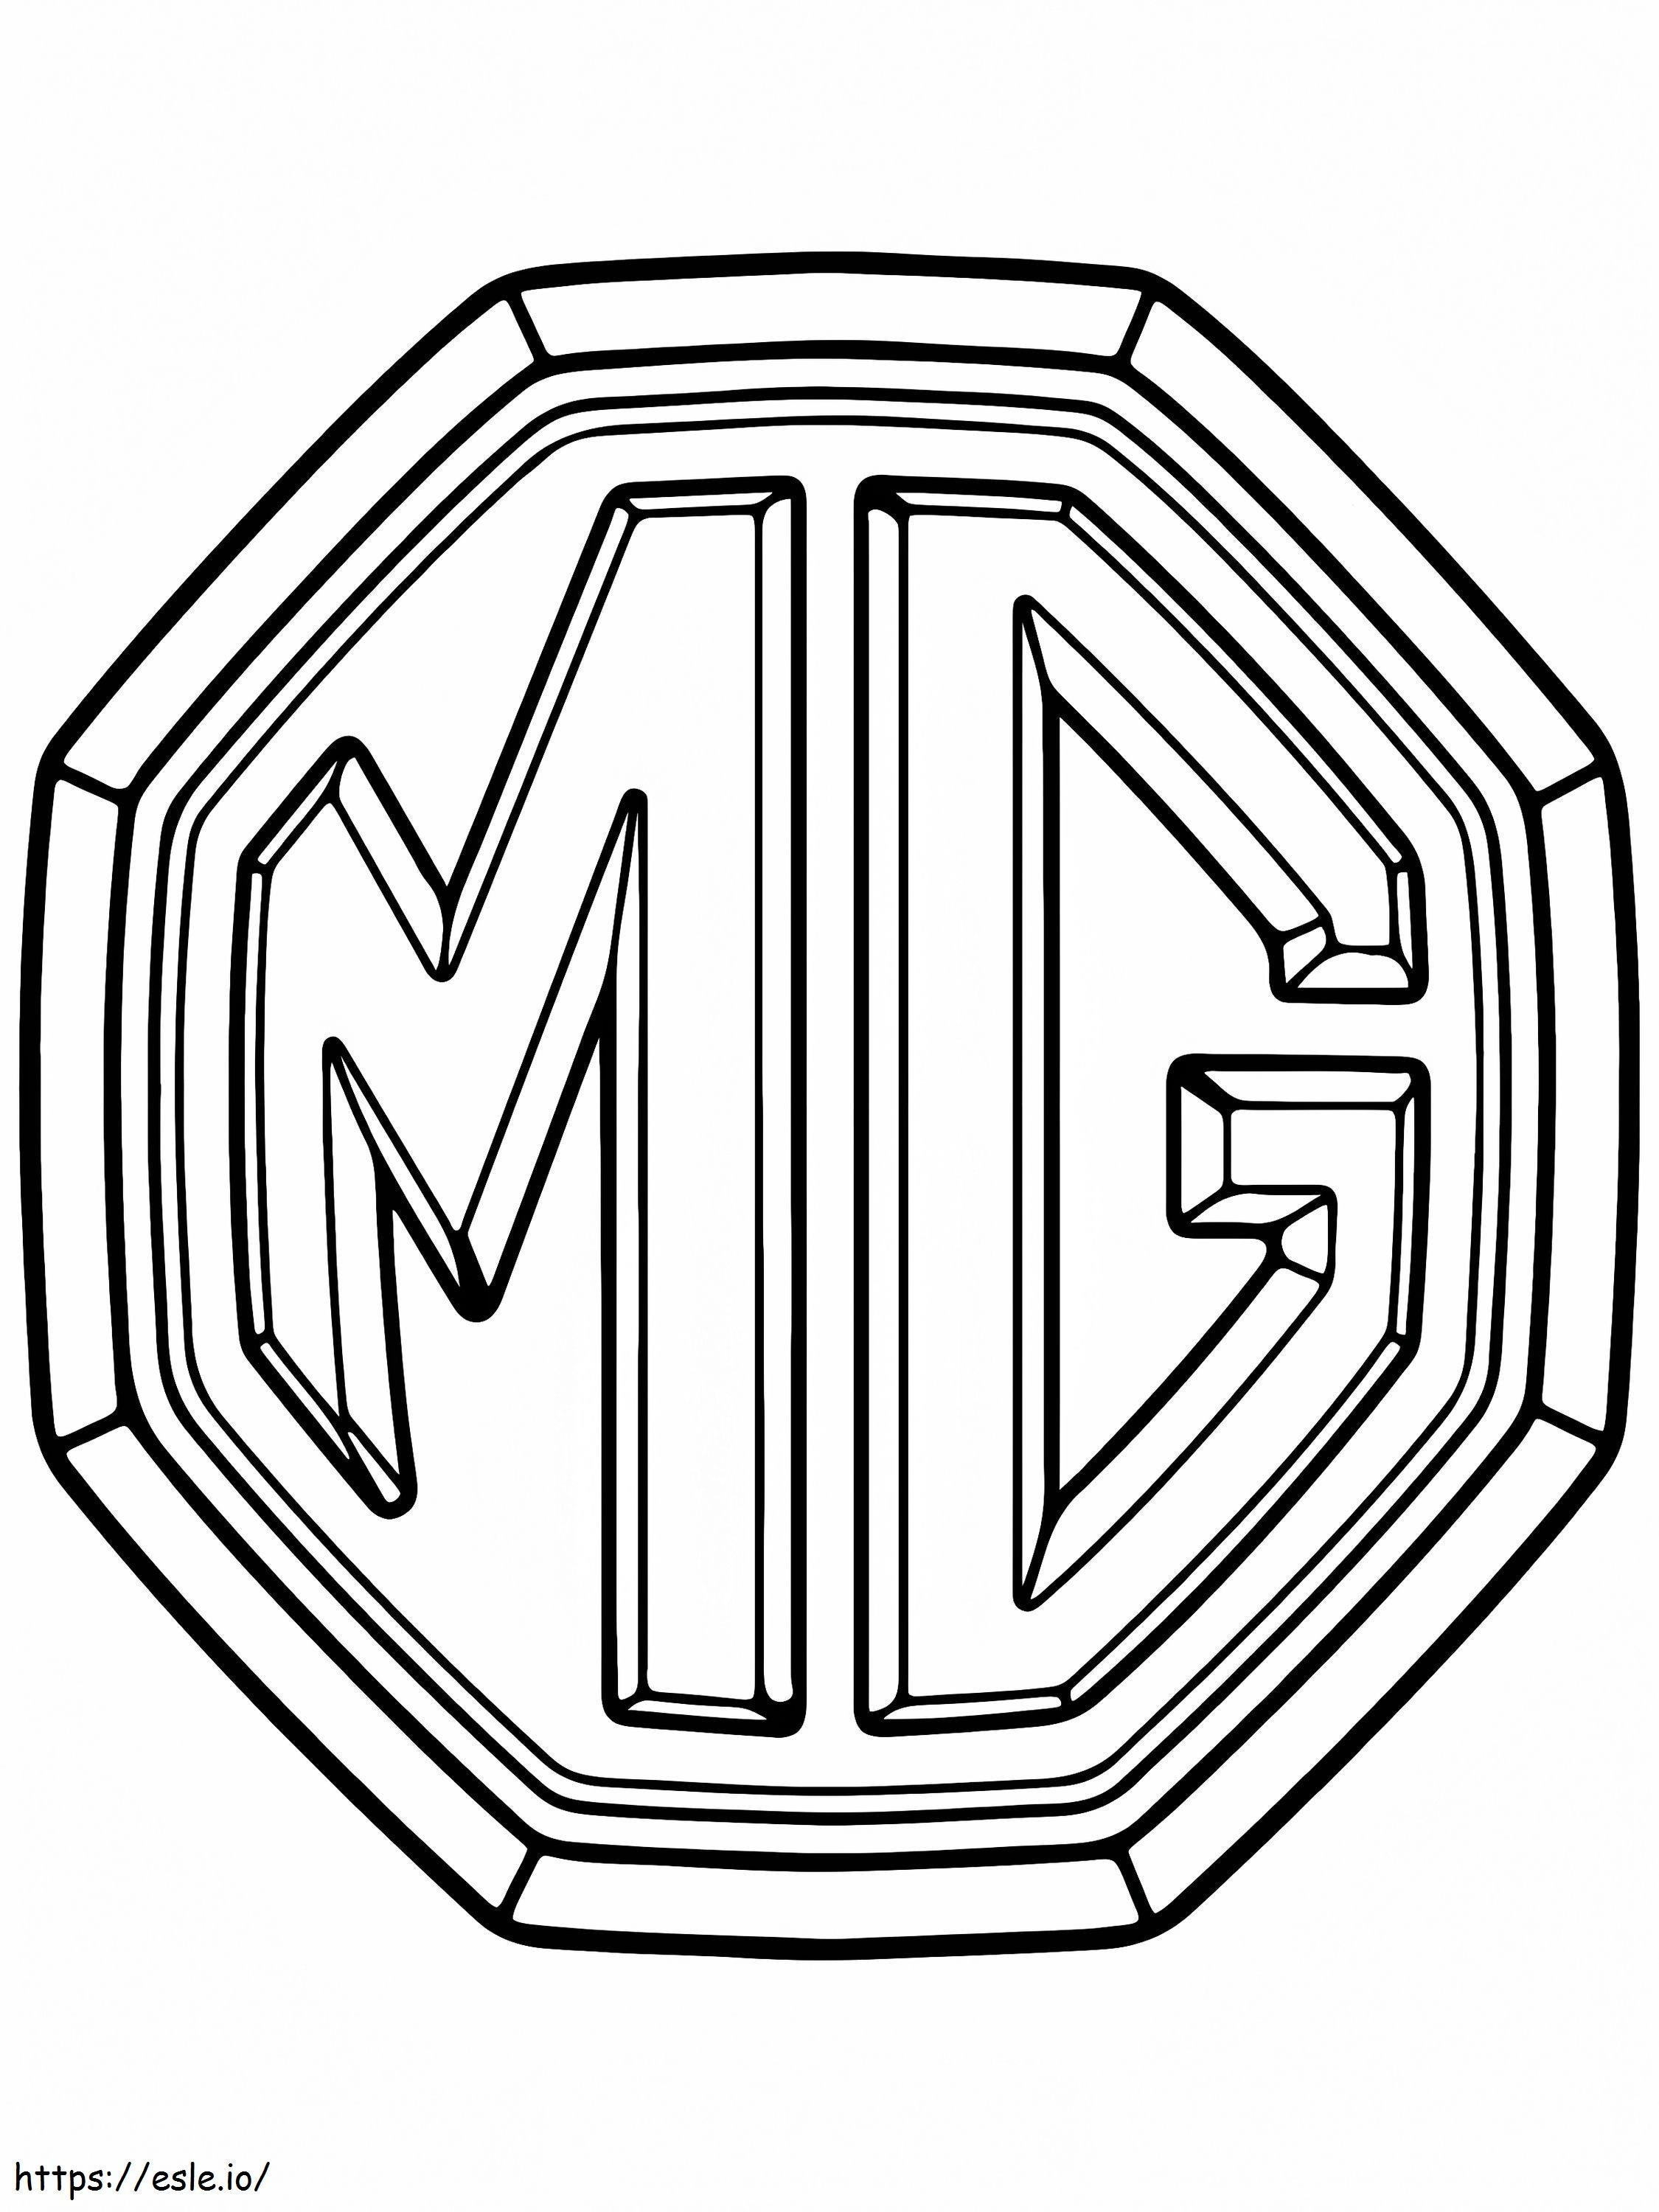 Coloriage Logo De Voiture Mg à imprimer dessin